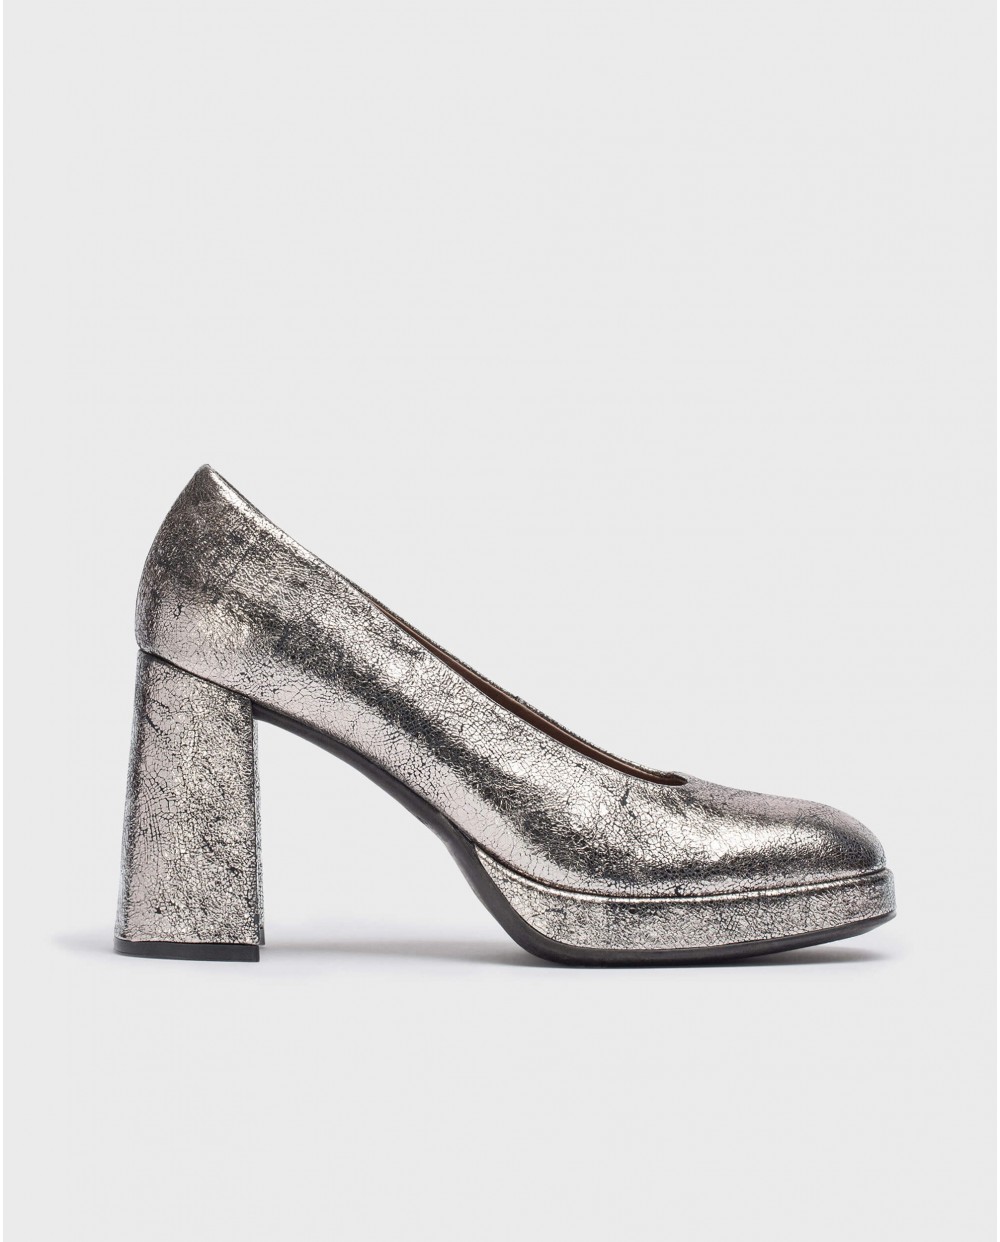 Wonders-Heels-Lead CAPTAIN high-heeled shoe